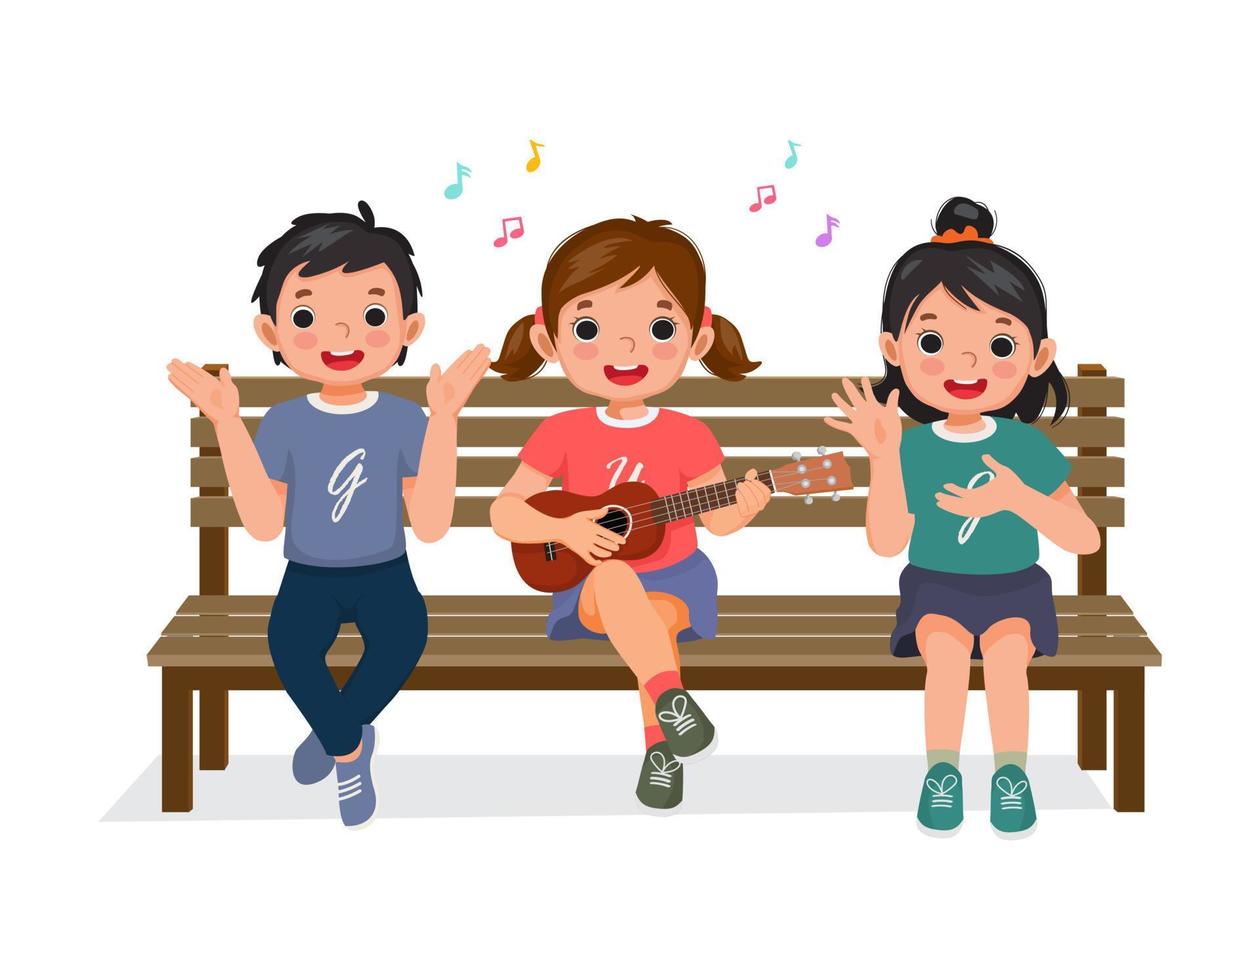 süße kleine Jungen und Mädchen klatschen in die Hände, singen, spielen Gitarre und haben Spaß zusammen auf der Bank sitzend vektor